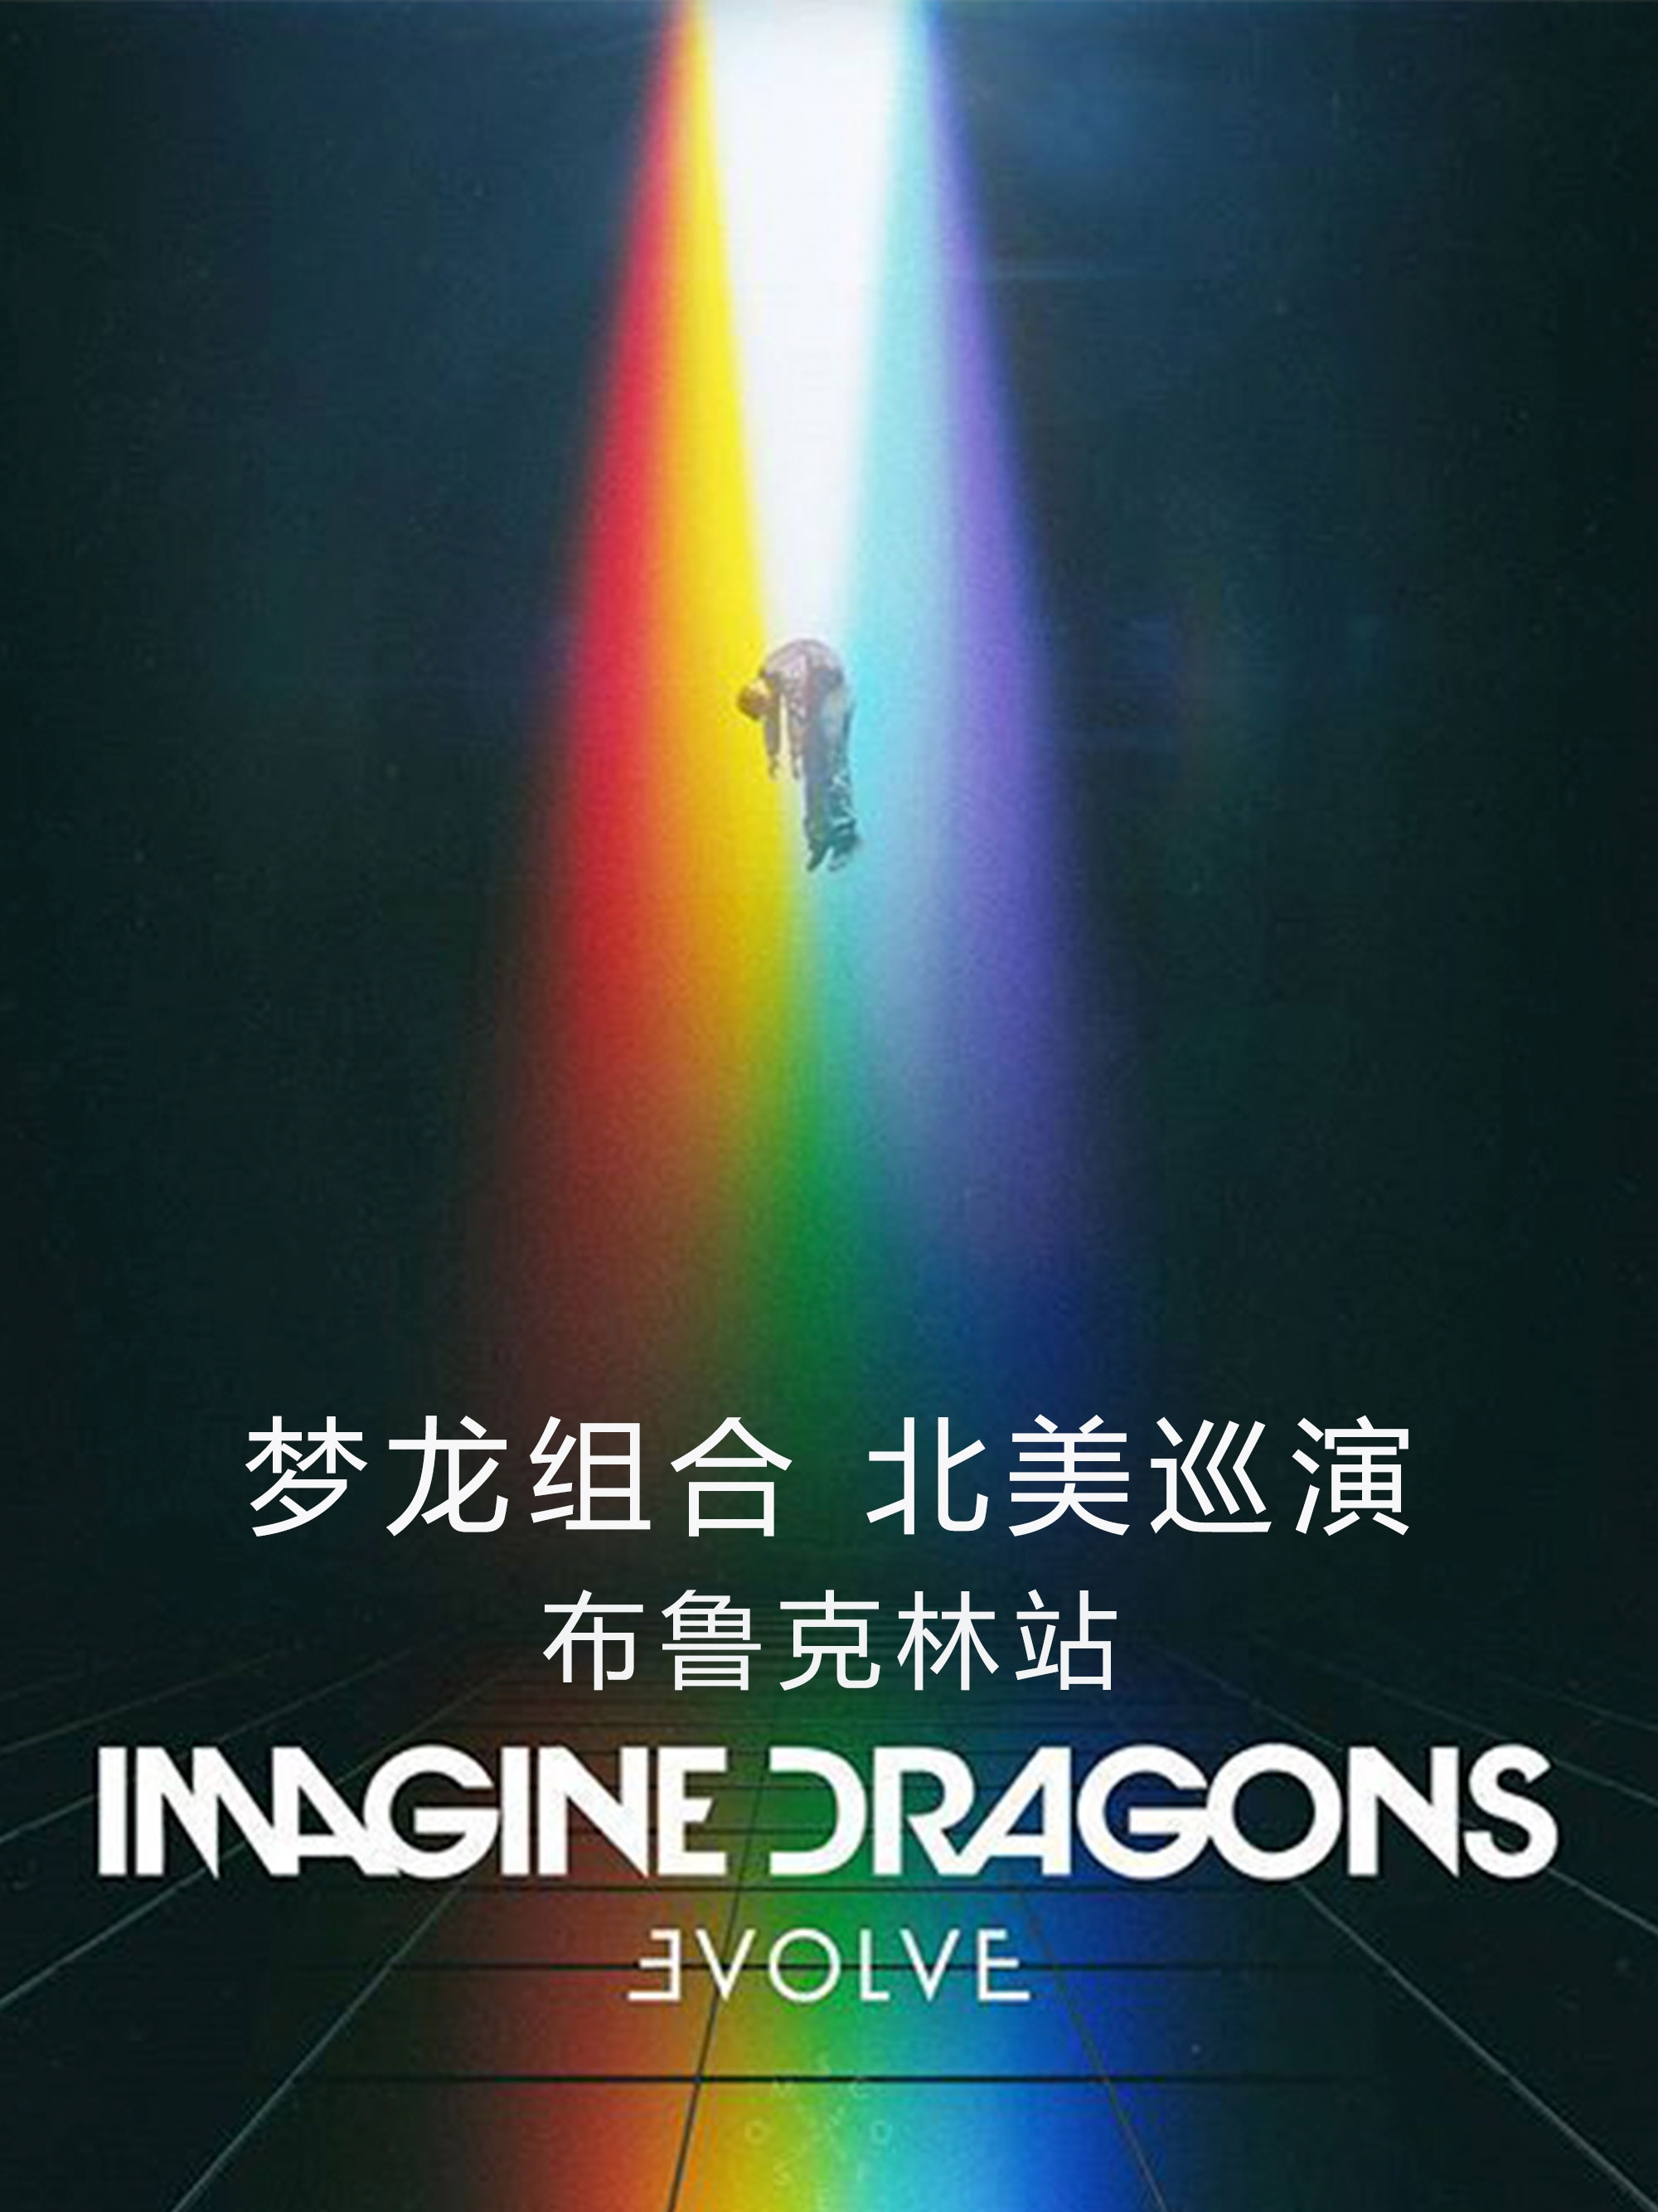 梦龙组合 北美巡演 布鲁克林站 Imagine Dragons Tour Brooklyn